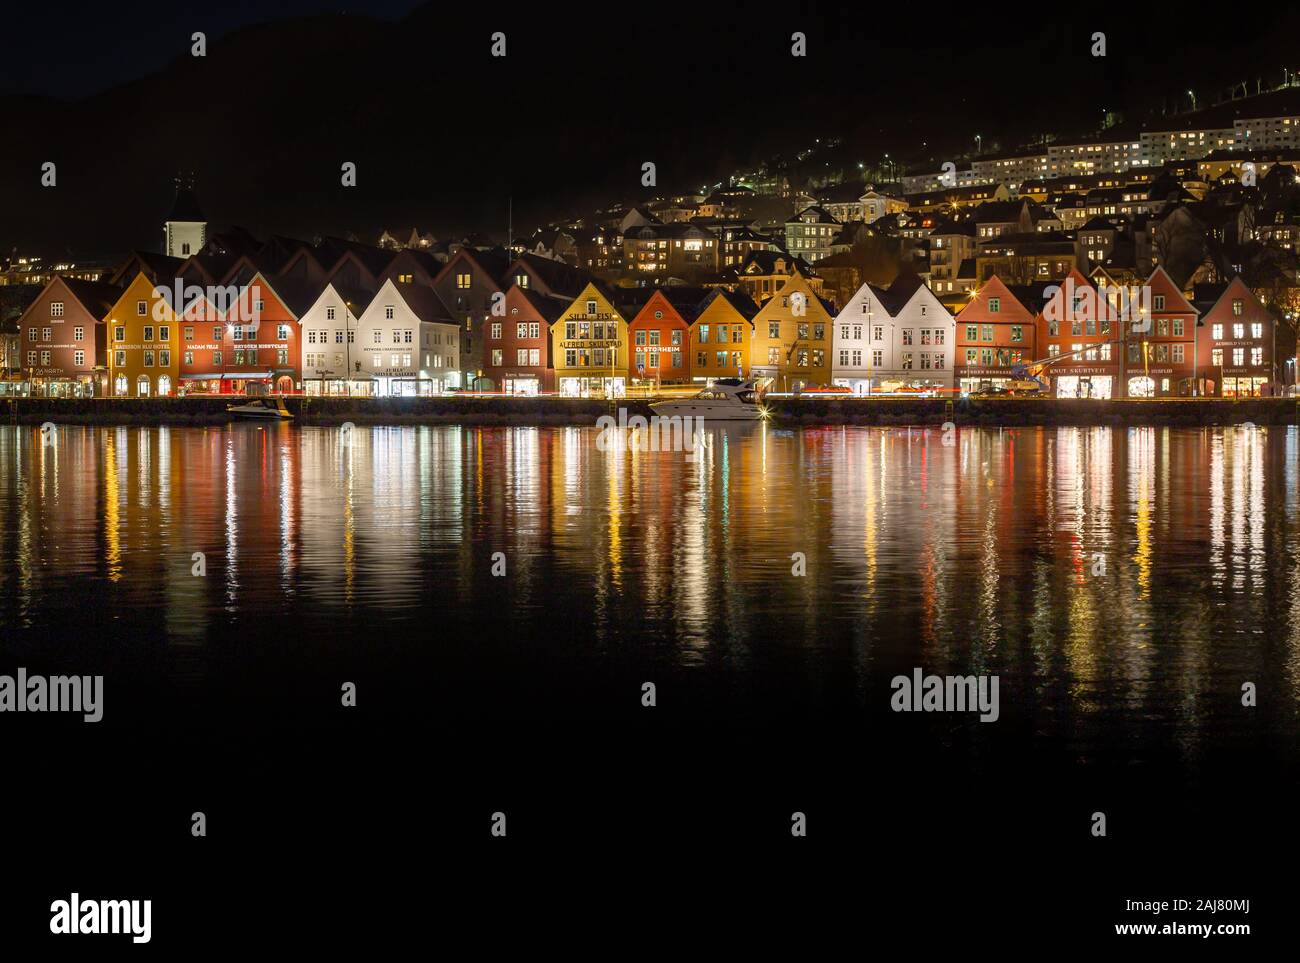 Bergen, Norvège - novembre 2019. Nuit à Bergen. Bryggen - attraction touristique la plus visitée à Bergen - UNESCO World Heritage site - vieux bois hansaetic Banque D'Images